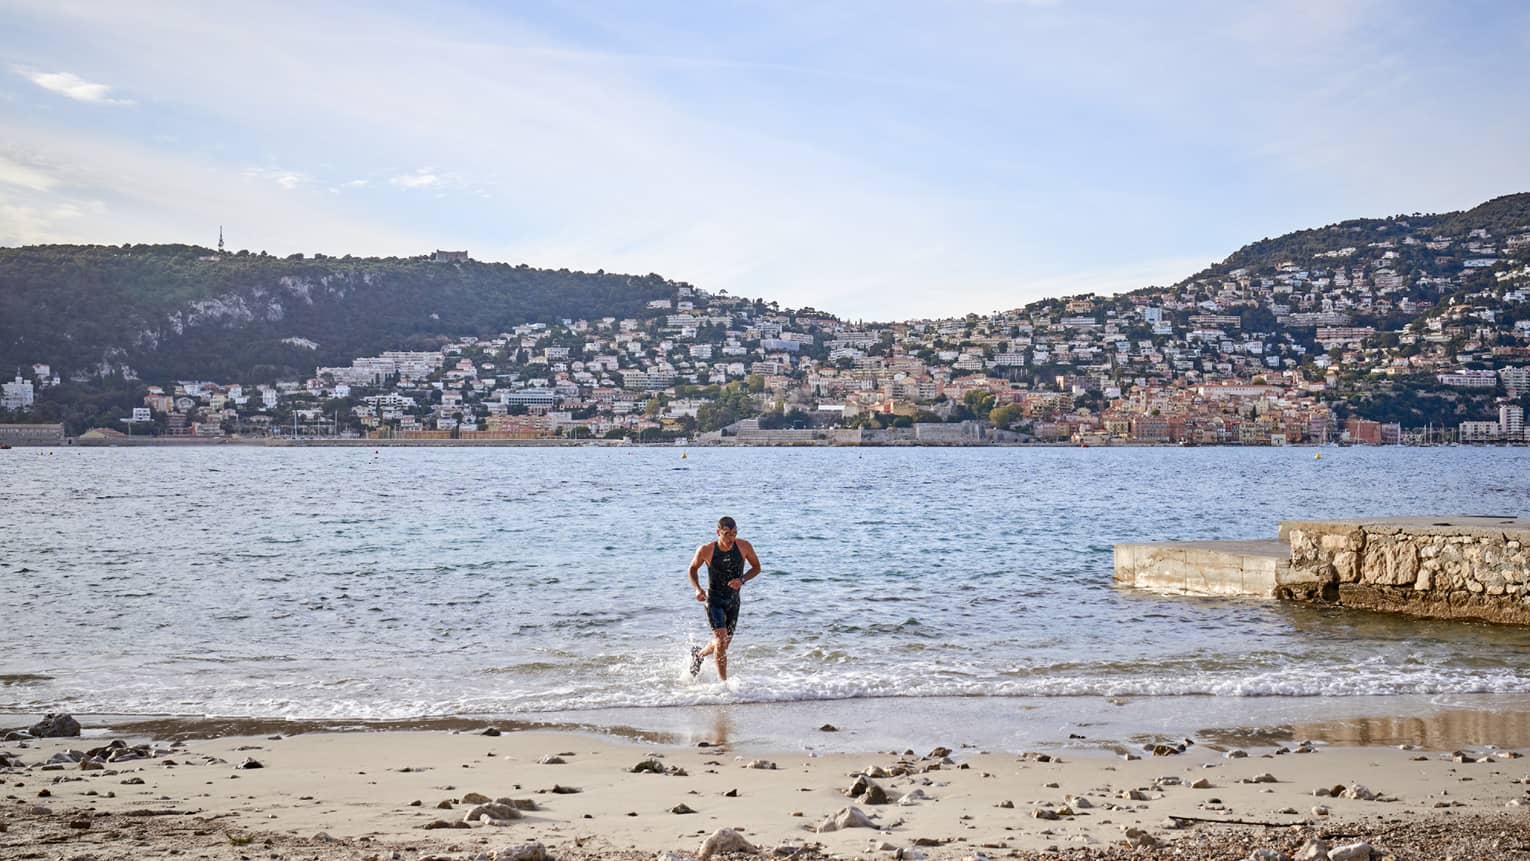 Man jogging in water toward sandy shore, hills in backdrop